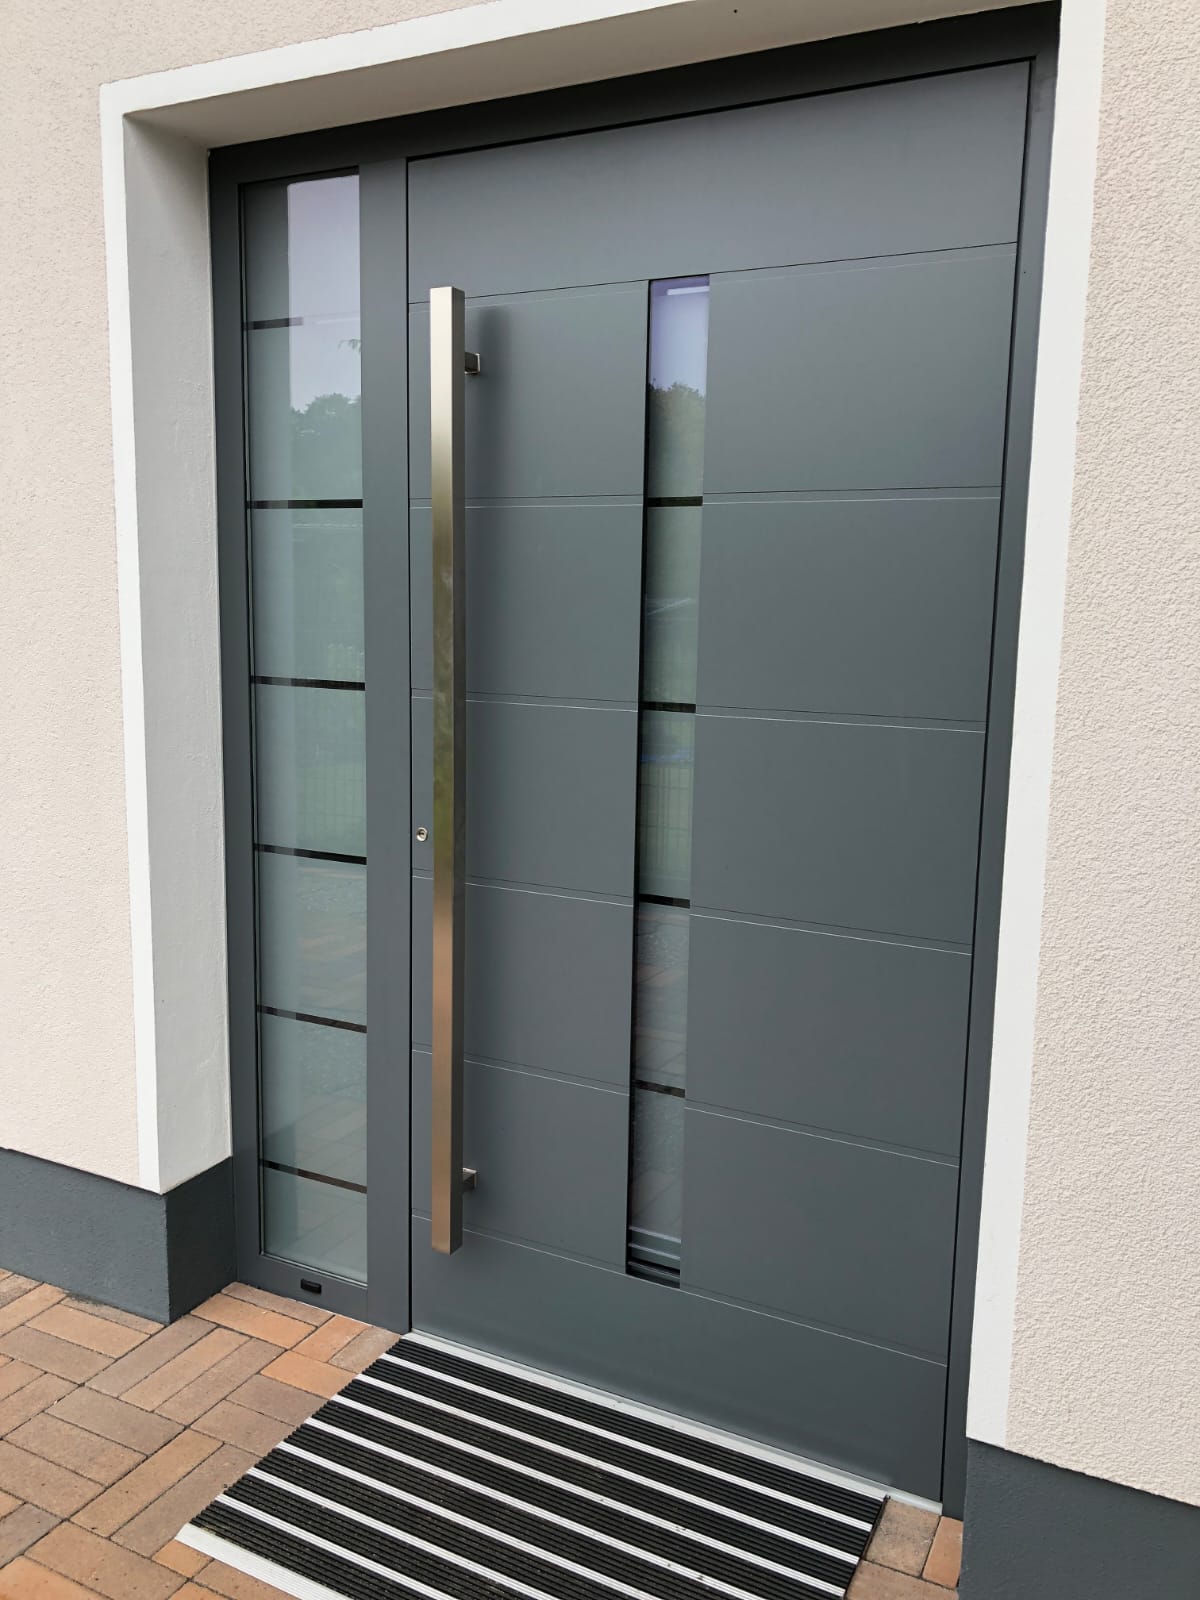 External aluminium door